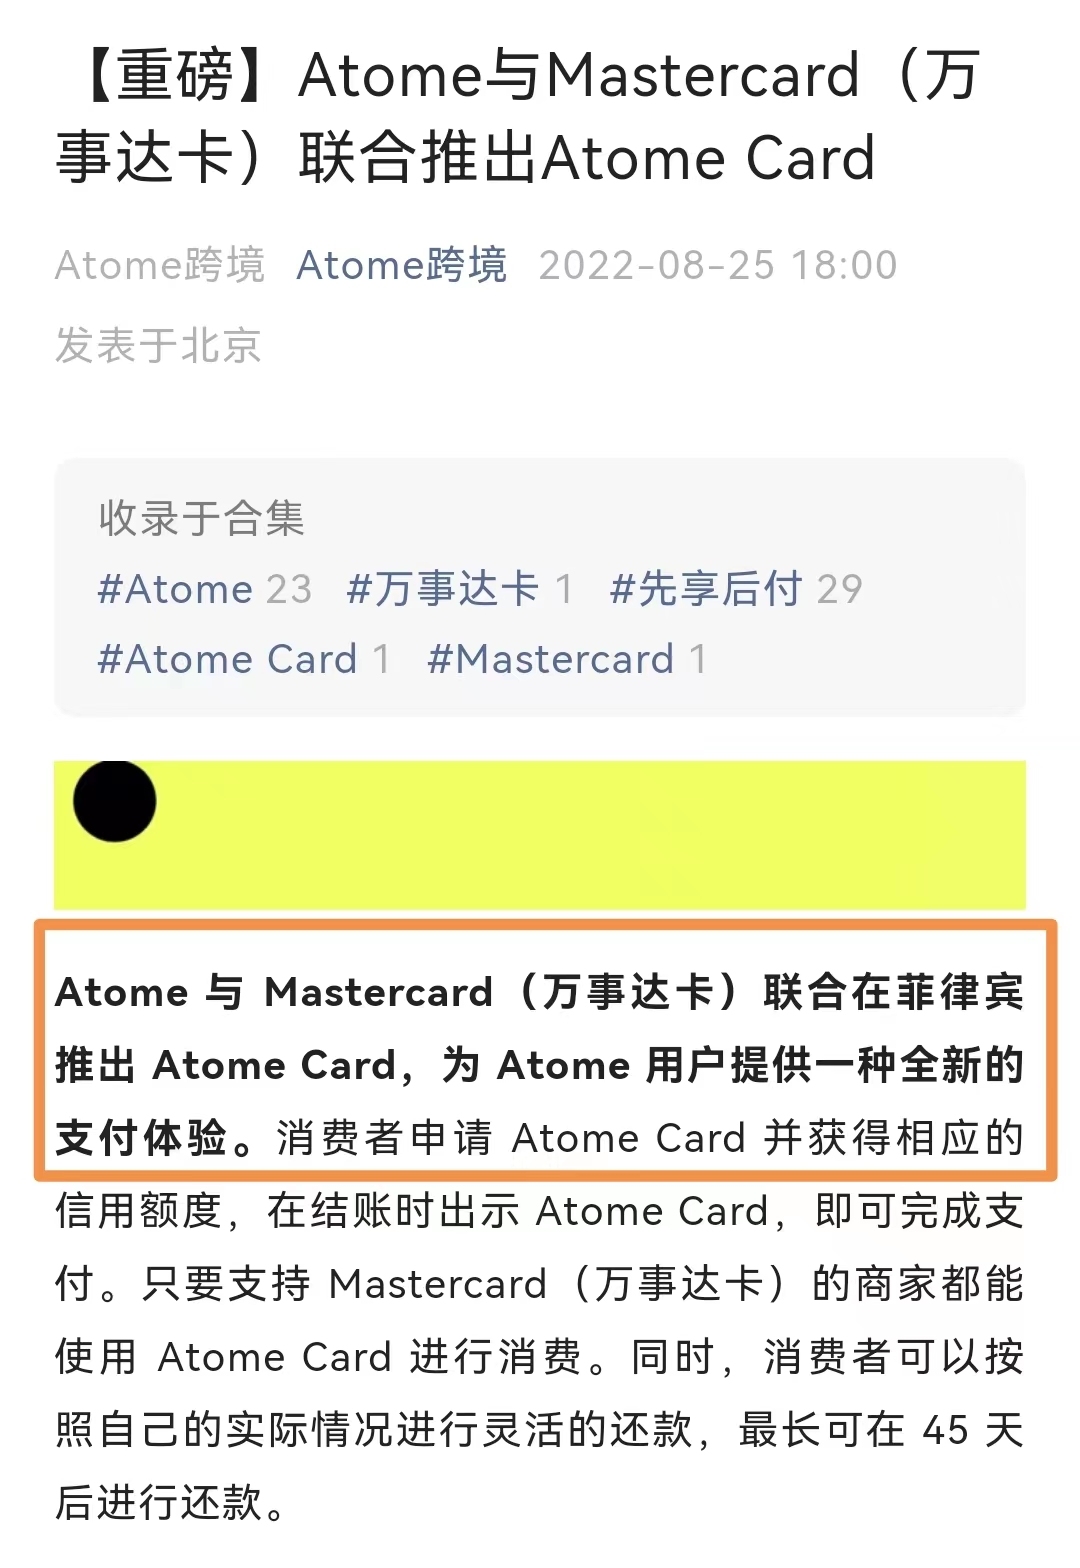 Atome联合万事达卡在菲律宾推出Atome Card